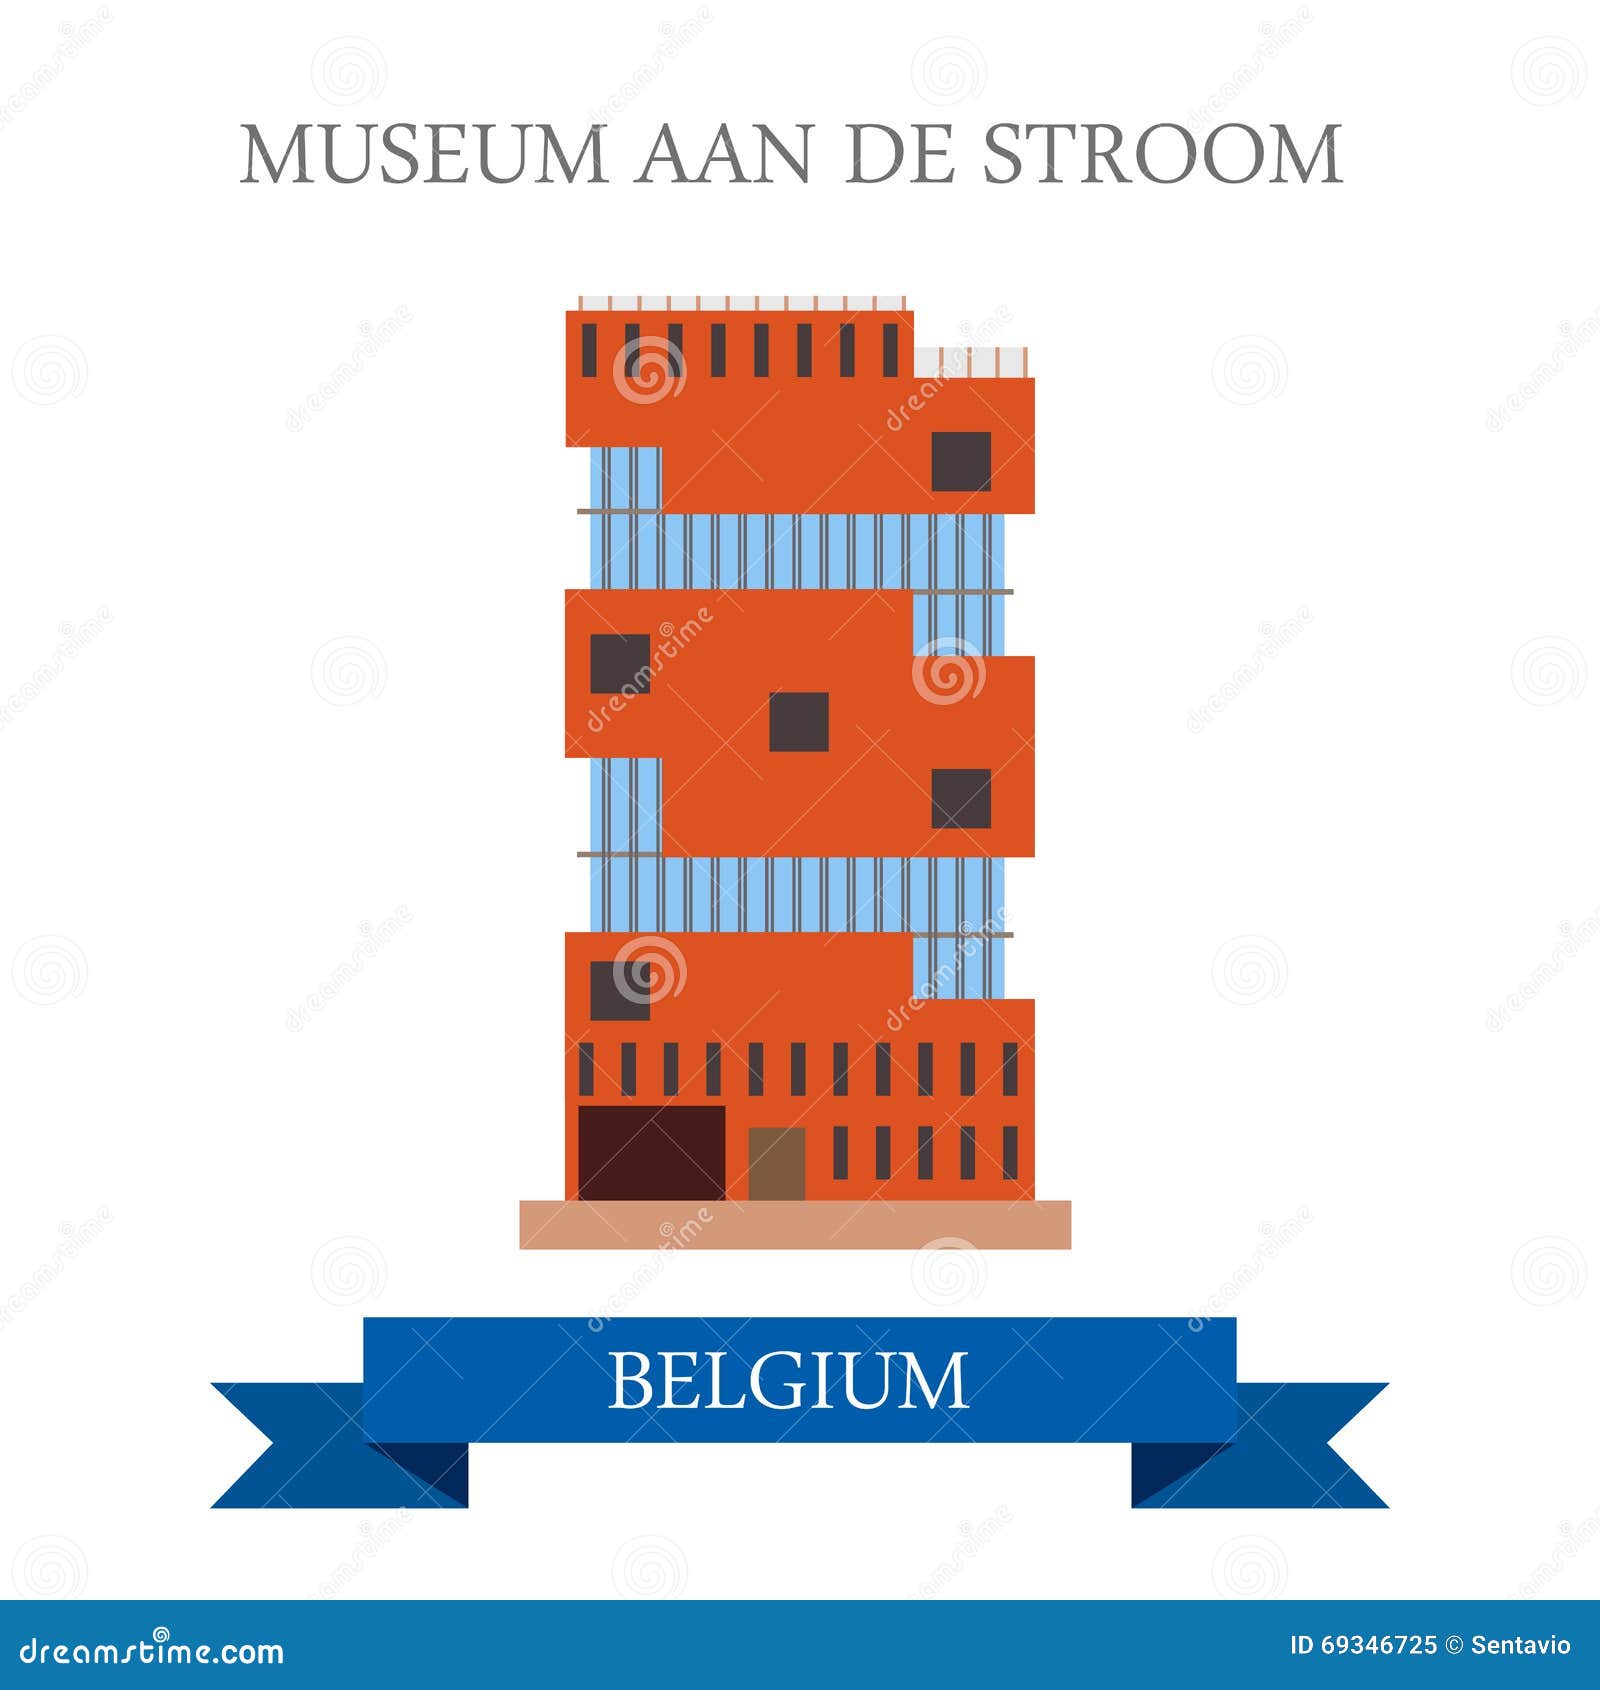 museum aan de stroom in antwerp belgium. flat cartoon style historic sight showplace attraction web site  . worl